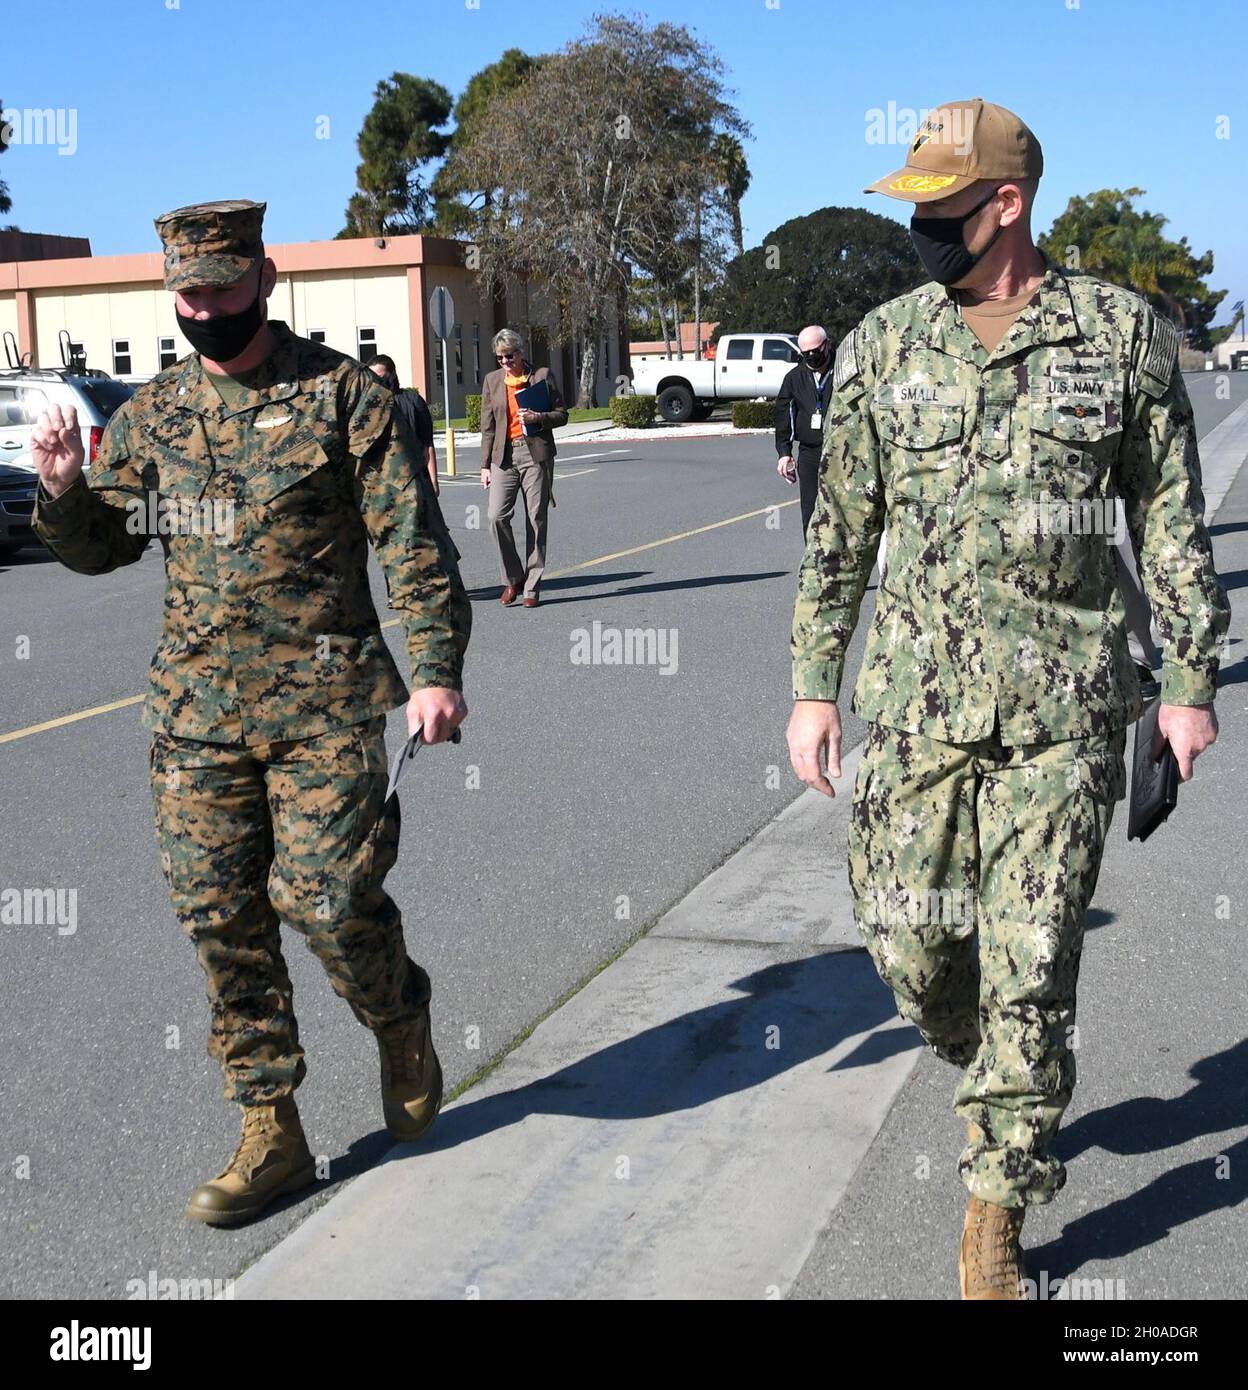 CAMP PENDLETON, California - El Teniente de Marina de los Estados Unidos  Michael Liguori (izquierda), comandante de la actividad de apoyo a sistemas  tácticos del Cuerpo de Infantería de Marina (MCTSSA) acogió